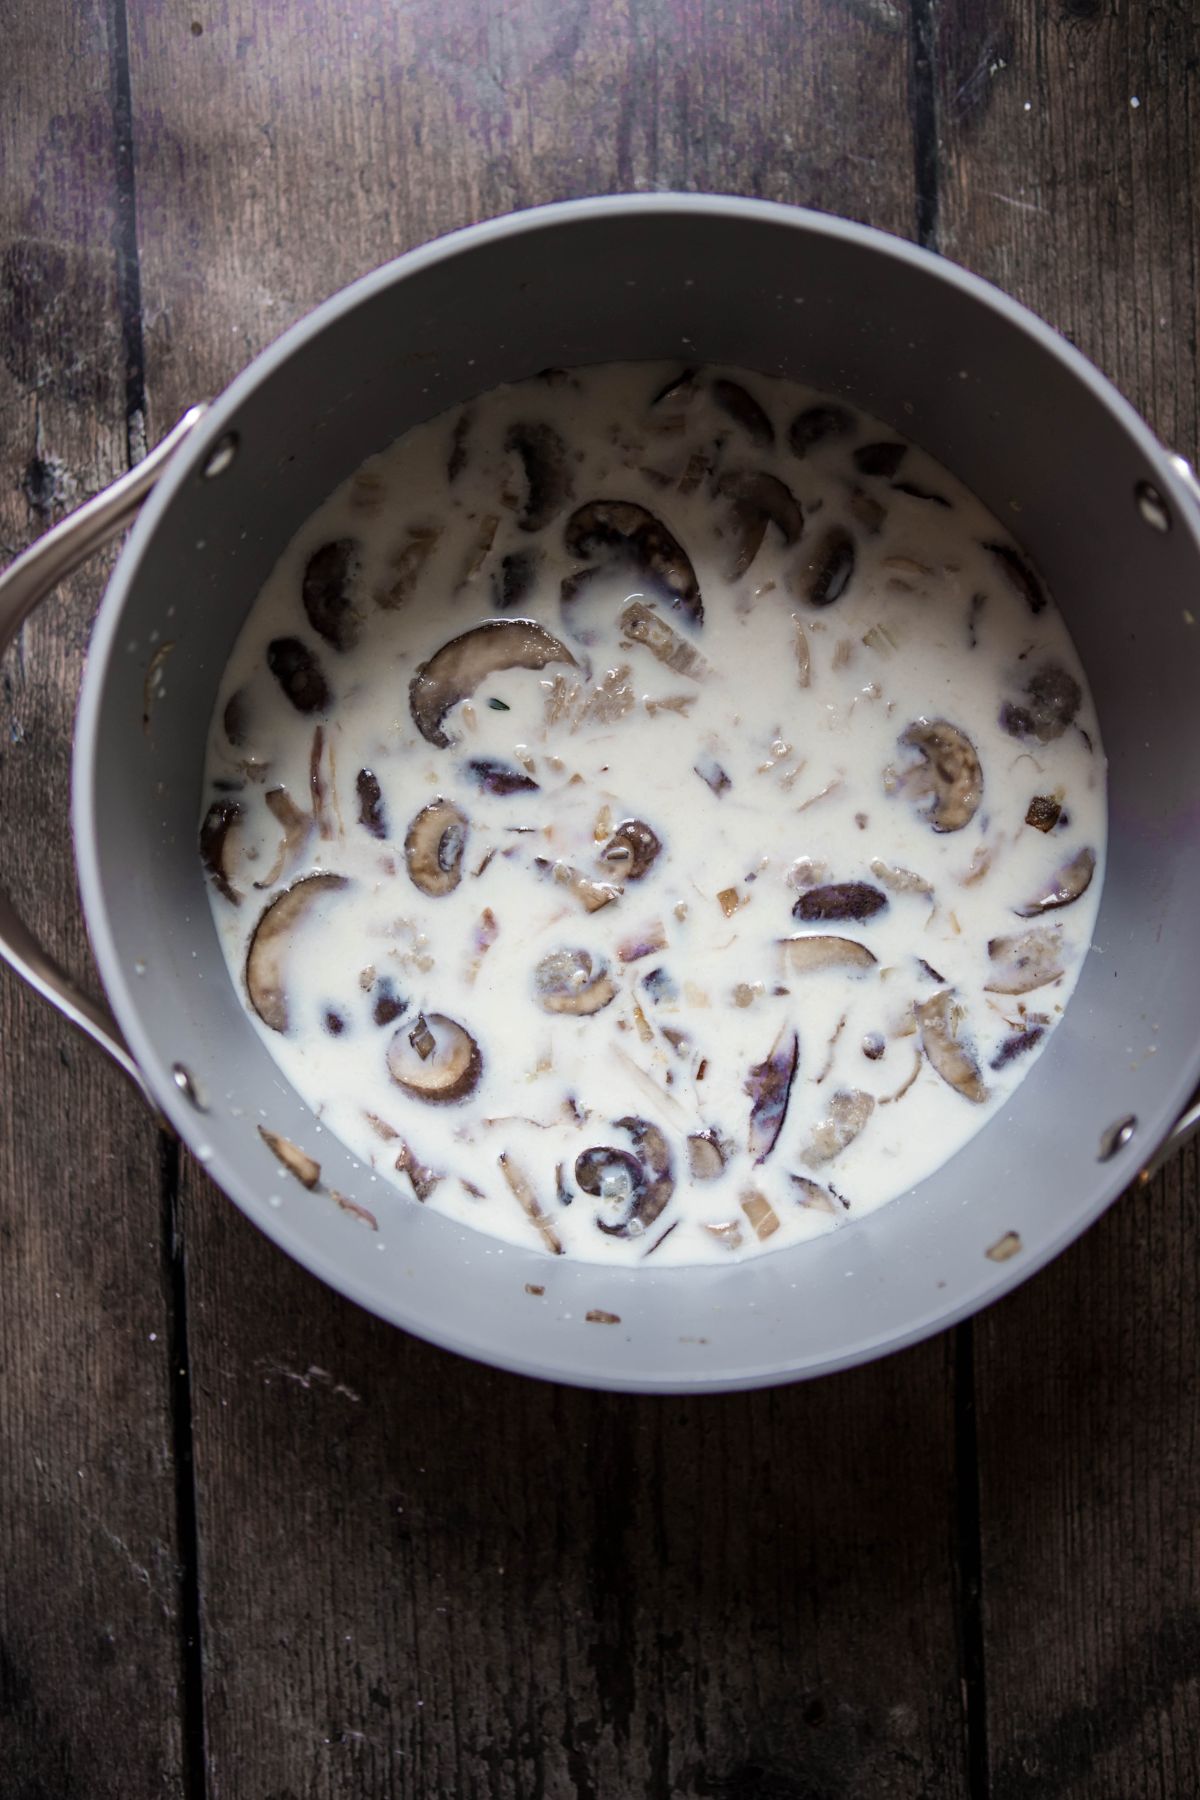 mushrooms in milk in a pot